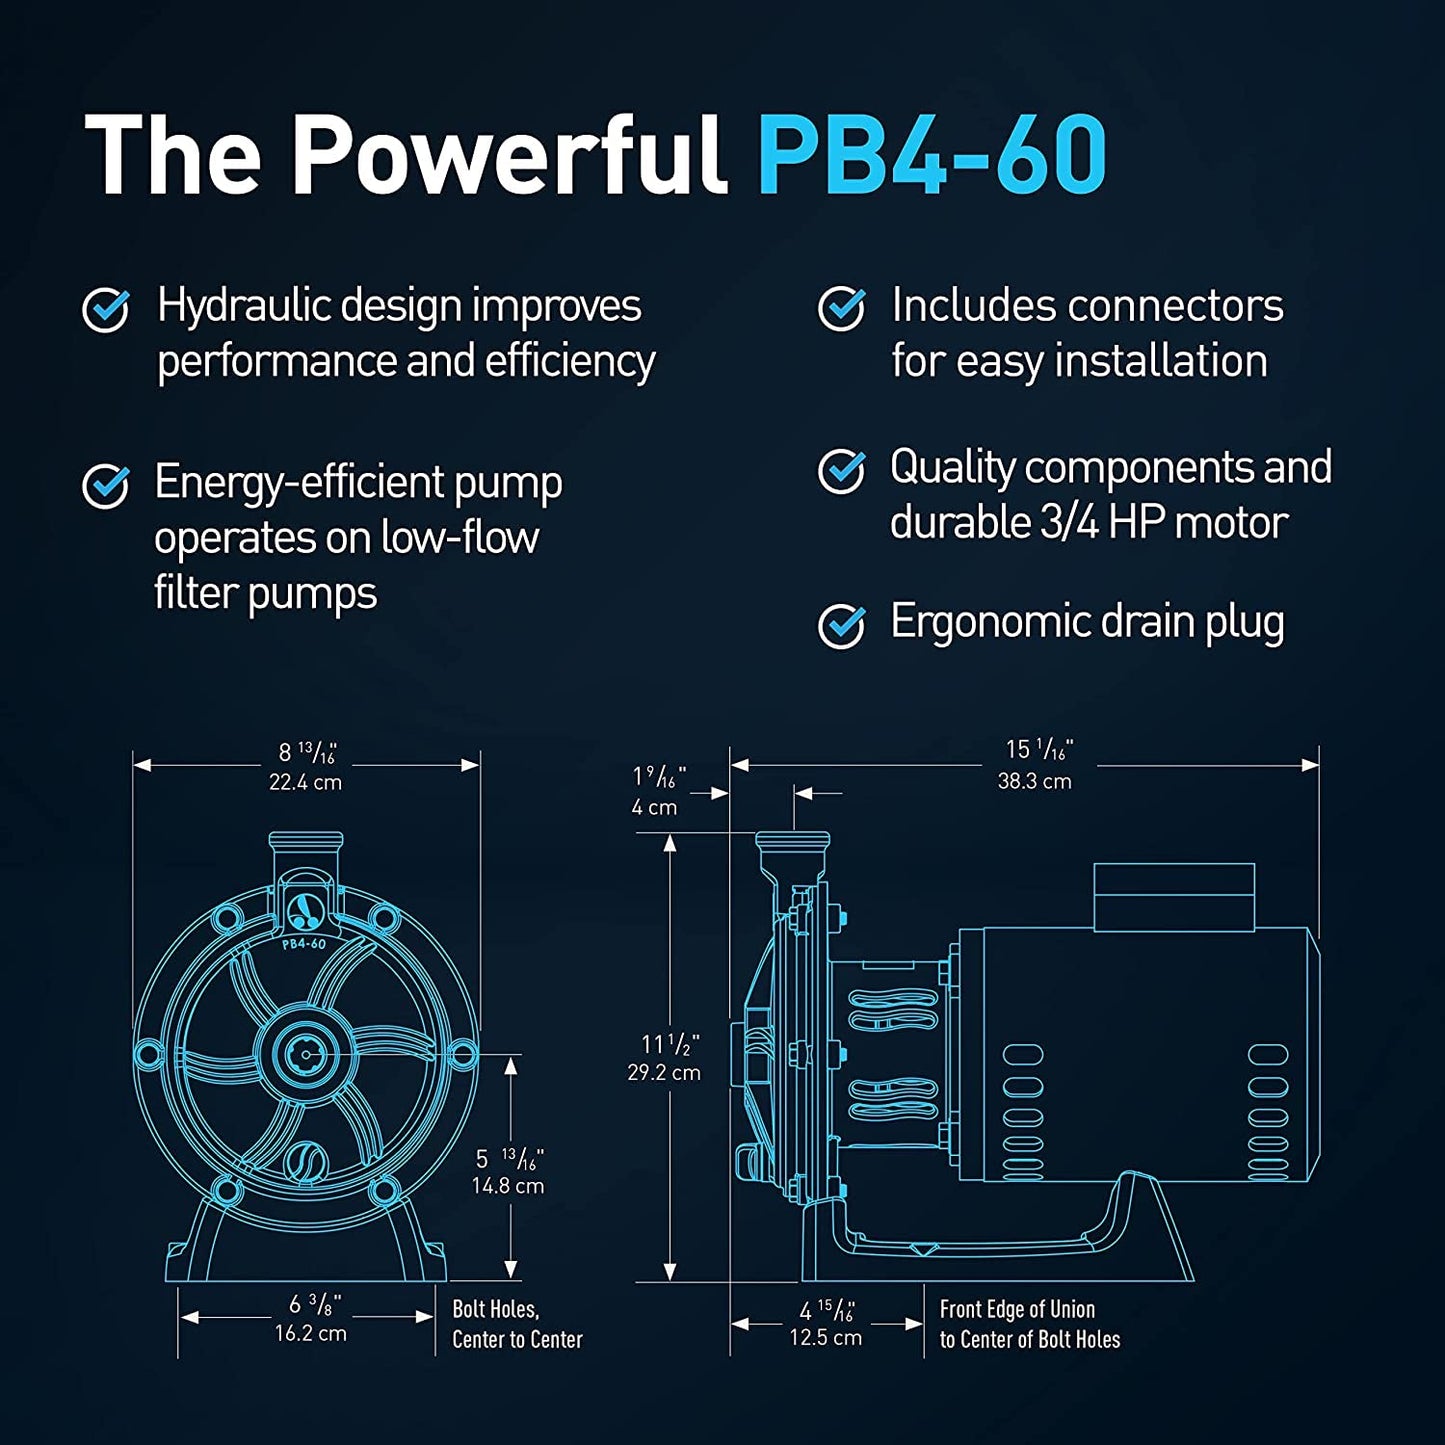 POLARIS PB4-60 OEM Booster Pump 3/4 HP for Pressure Pool Cleaners PB460 180-480